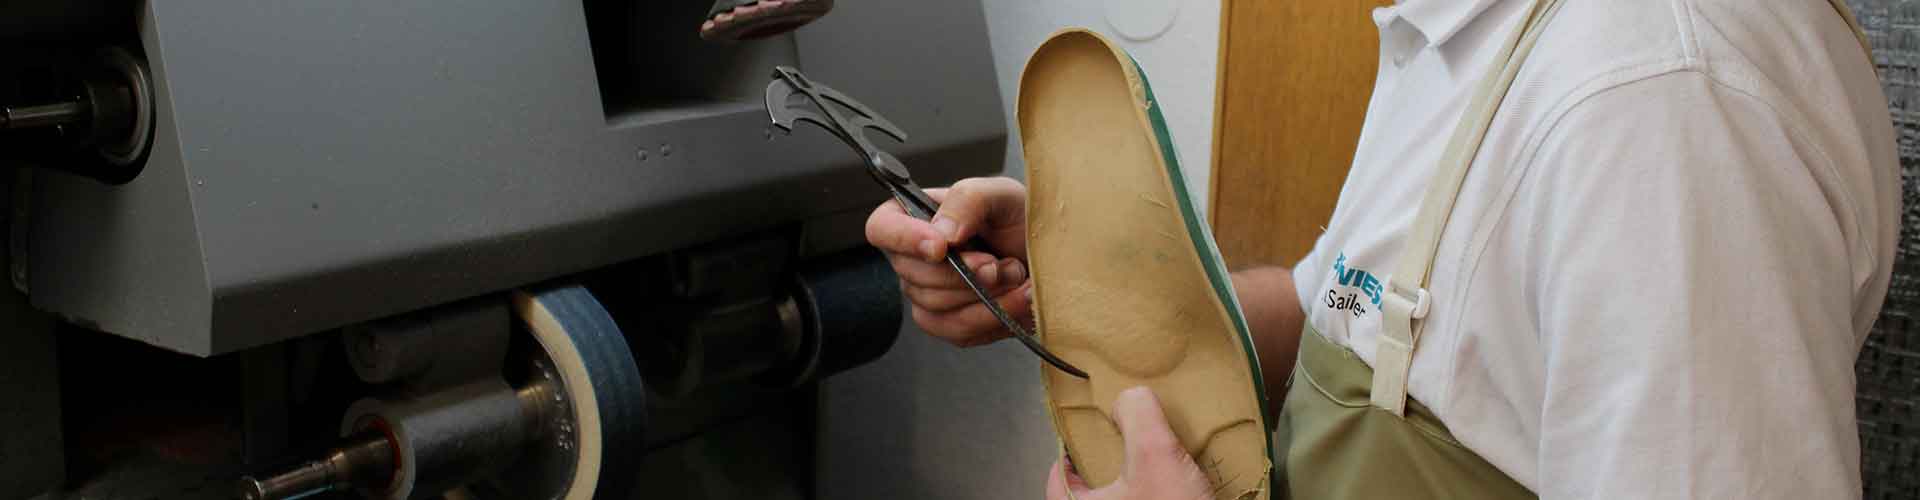 Fachgeschäft für orthopädische Schuhe 